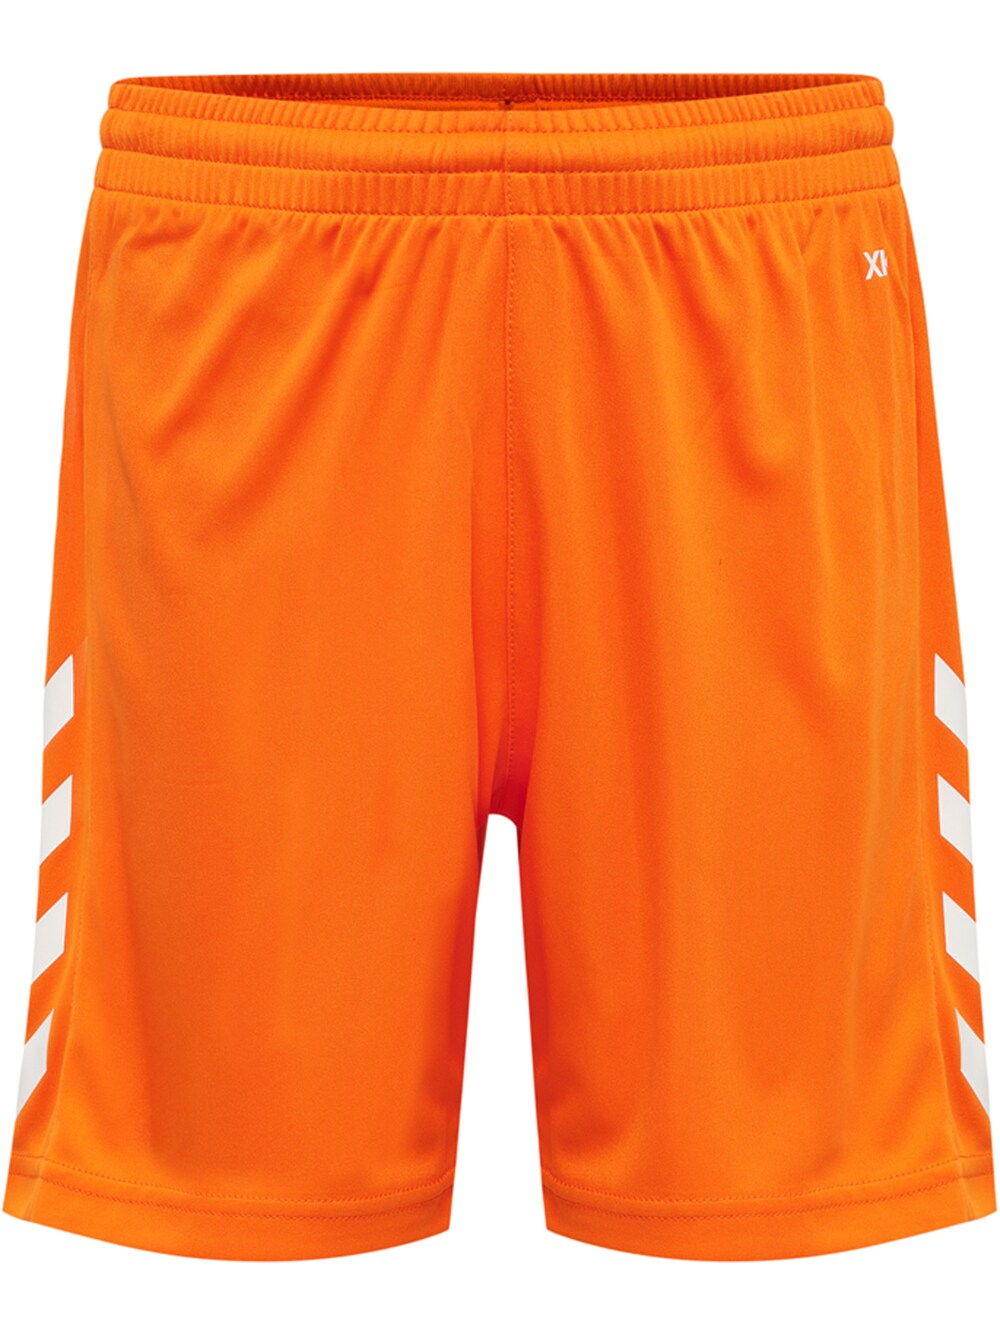 Обычные тренировочные брюки Hummel, апельсин